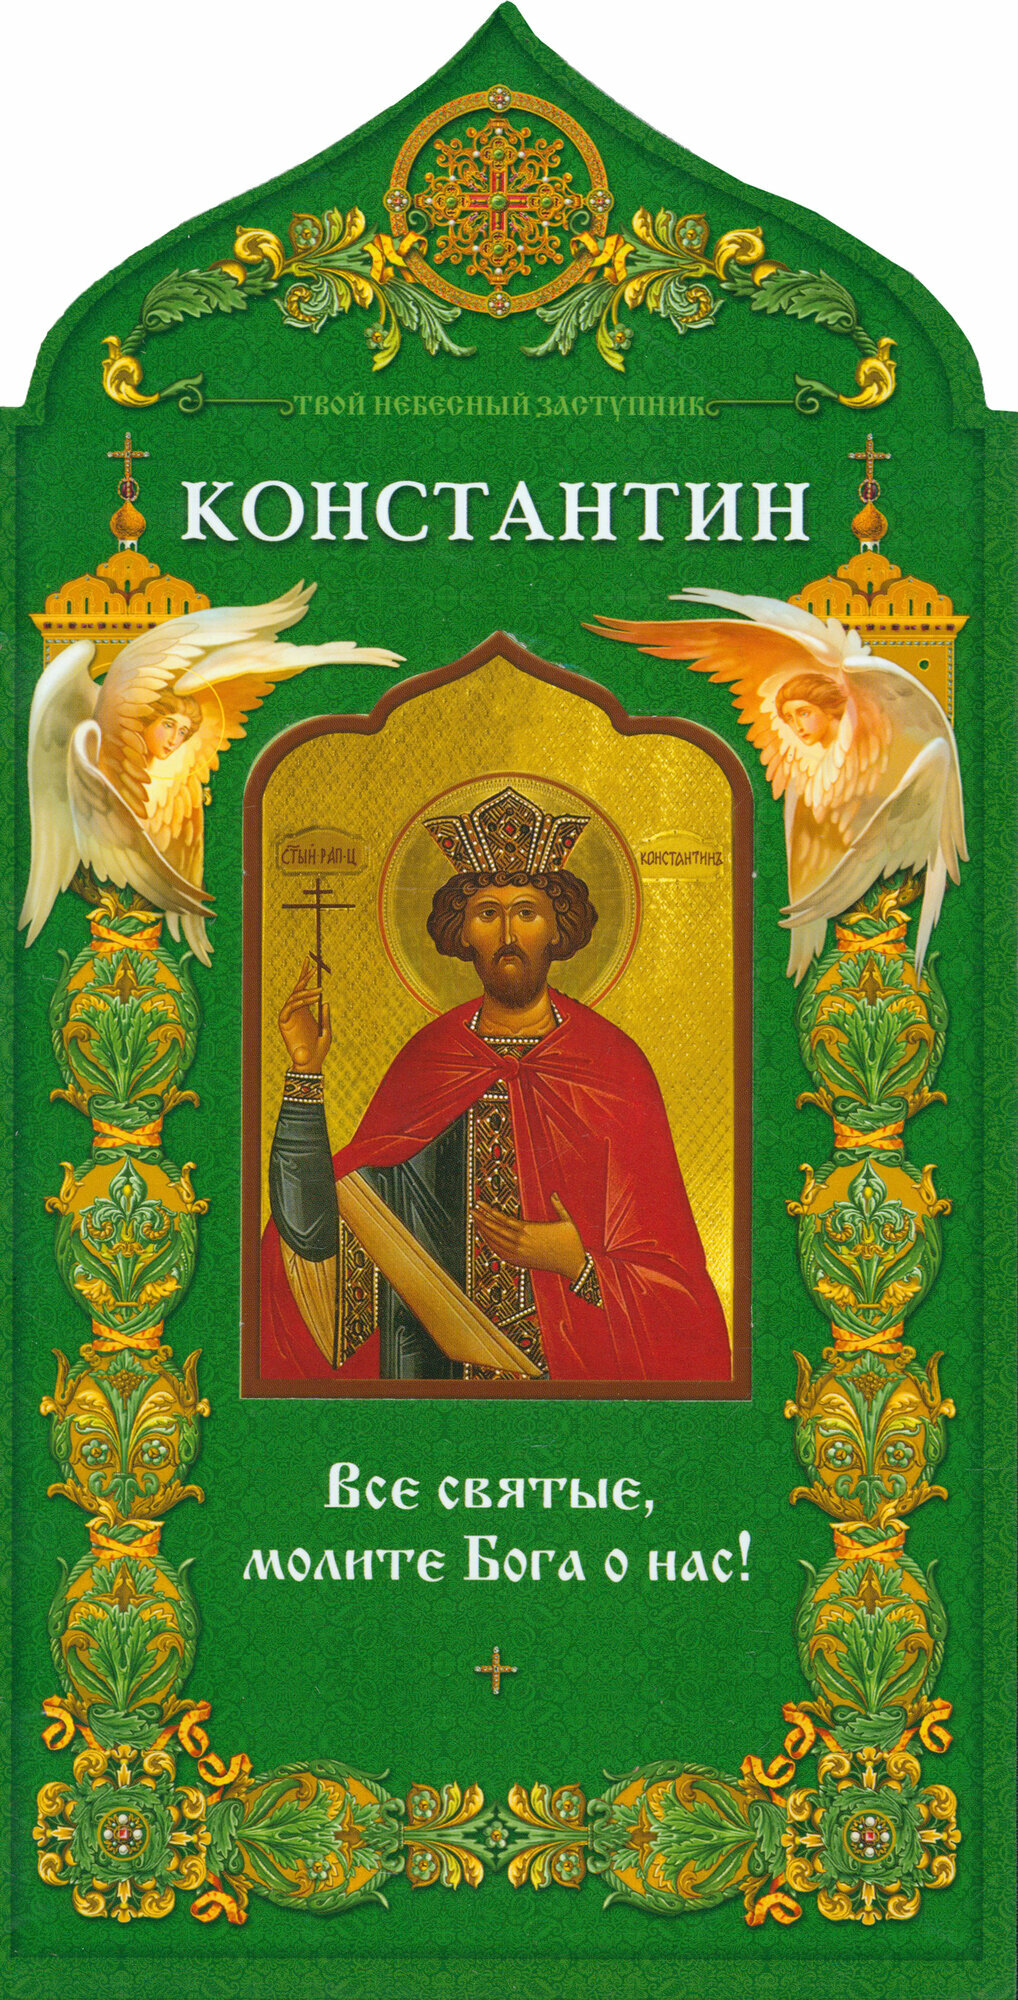 Равноапостольный царь Константин - фото №2